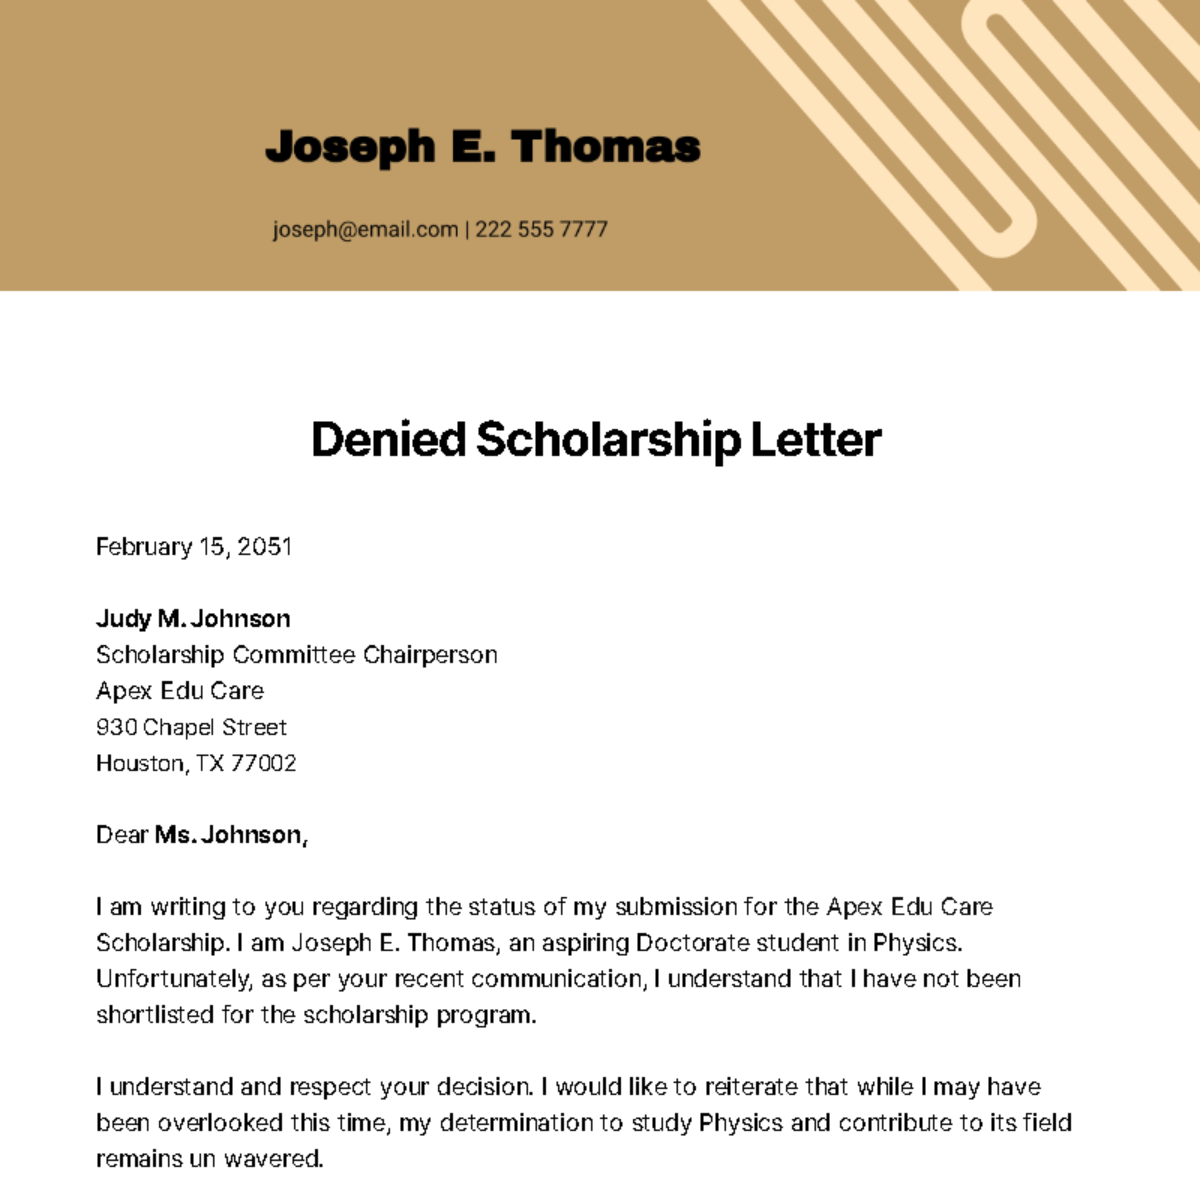 Denied Scholarship Letter Template